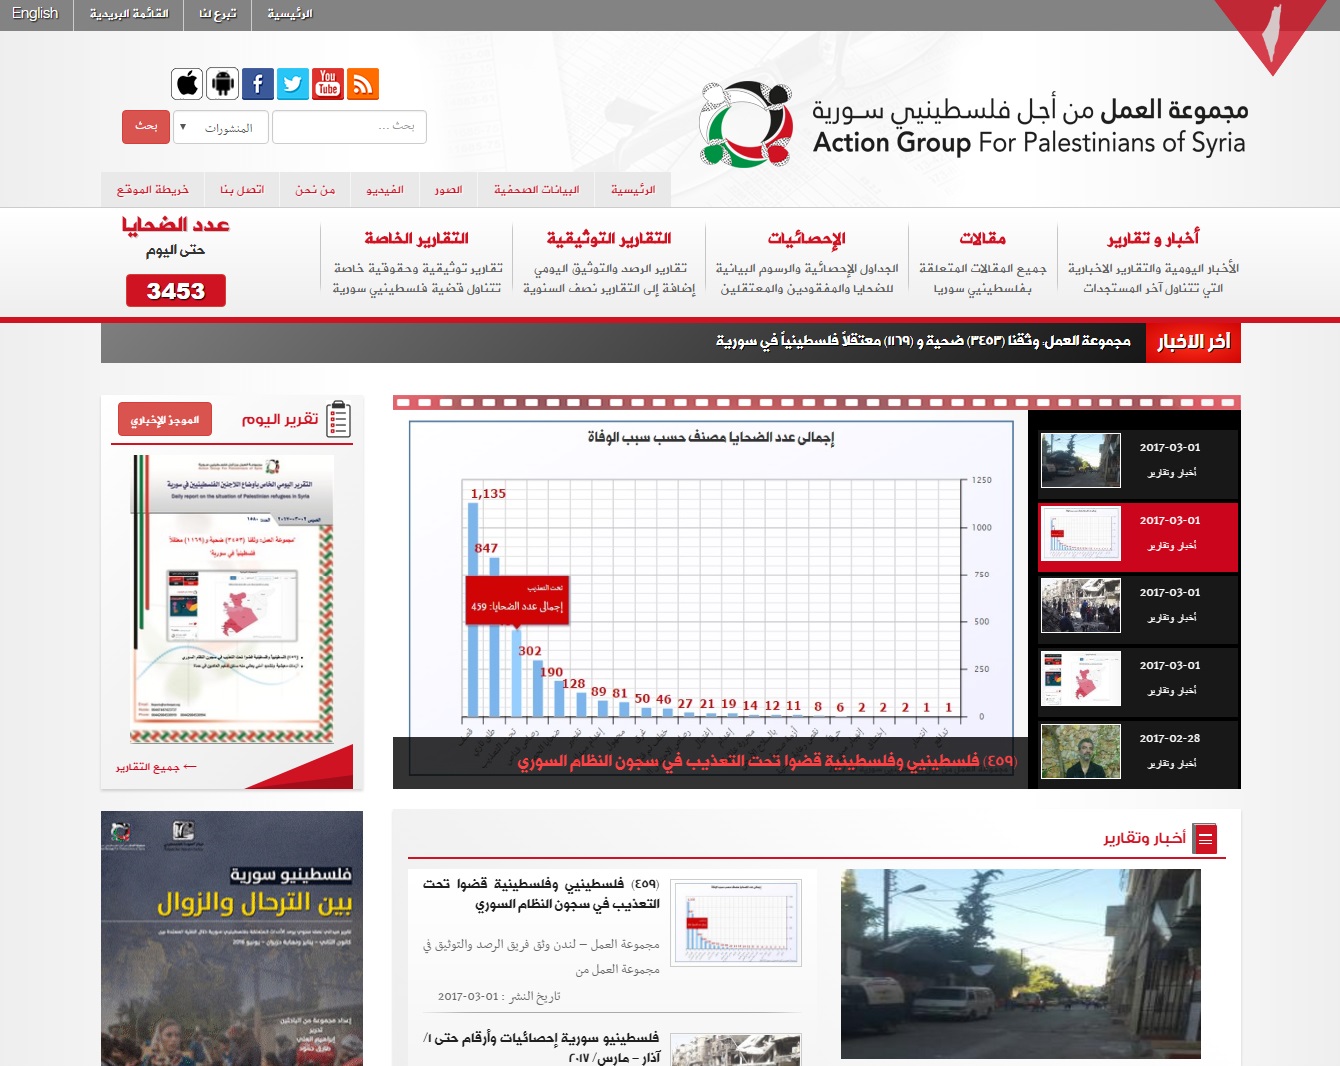 مجموعة العمل تتيح للباحثين والمؤسسات الحقوقية الوصول إلى حوالي (1600) تقرير توثيقي لمعاناة فلسطينيي سورية عبر موقعها على الإنترنت 